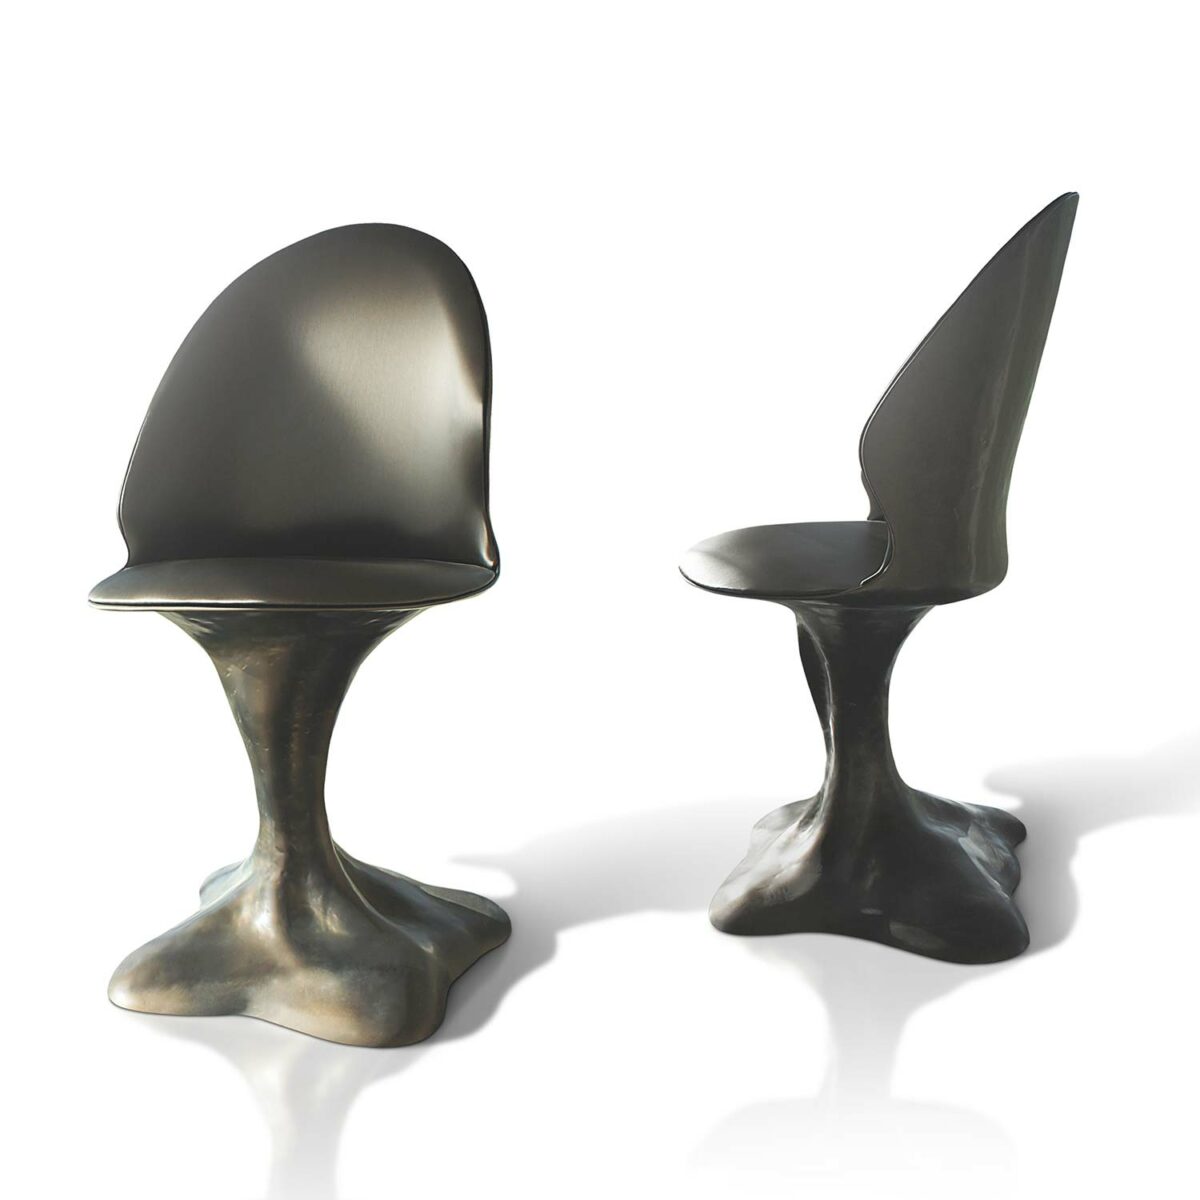 FLORA chair bronze color